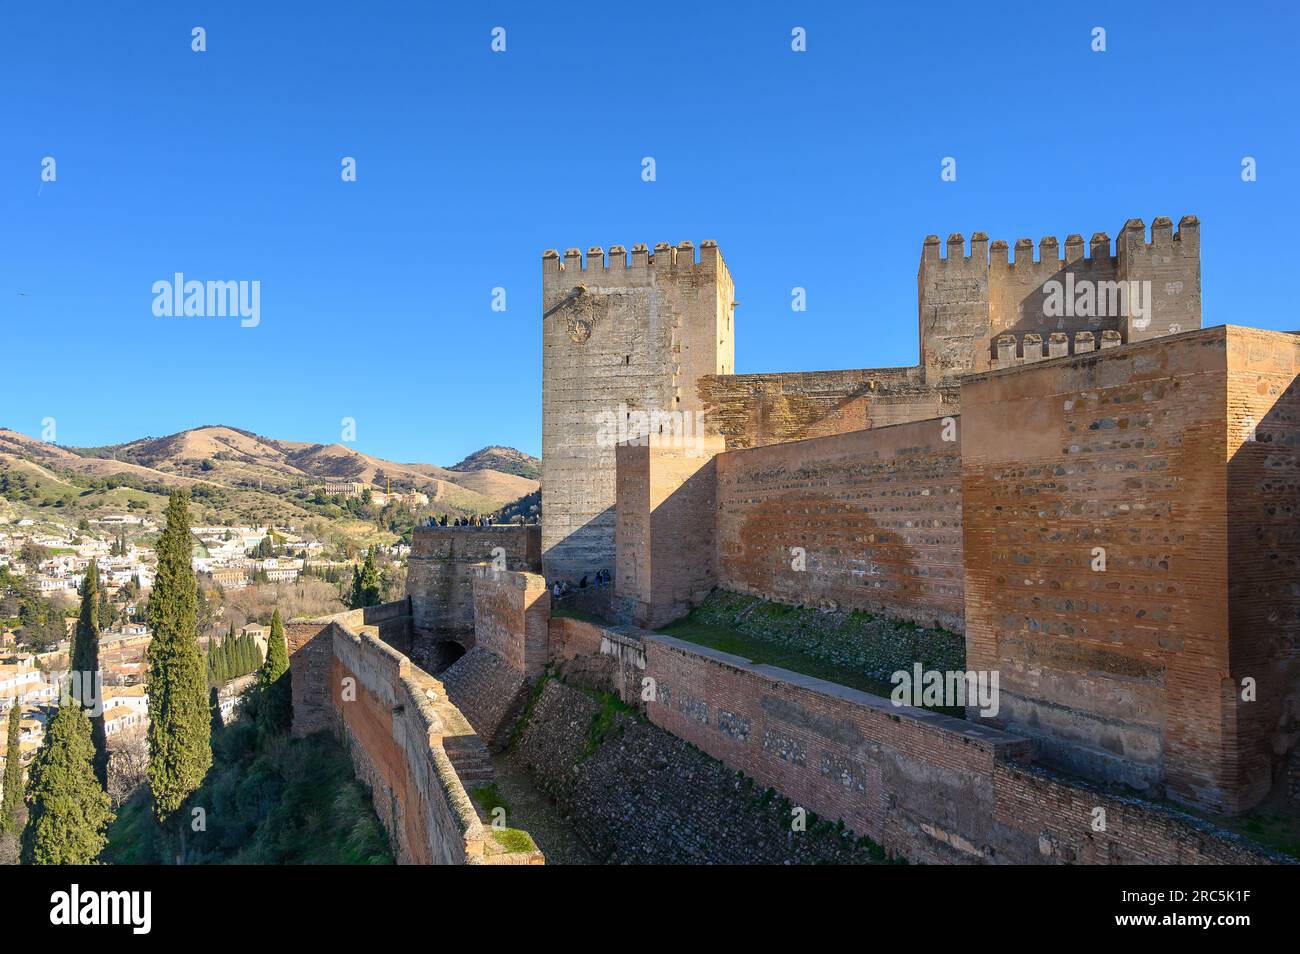 Arquitectura medieval de la Alhambra, Granada, España Foto de stock